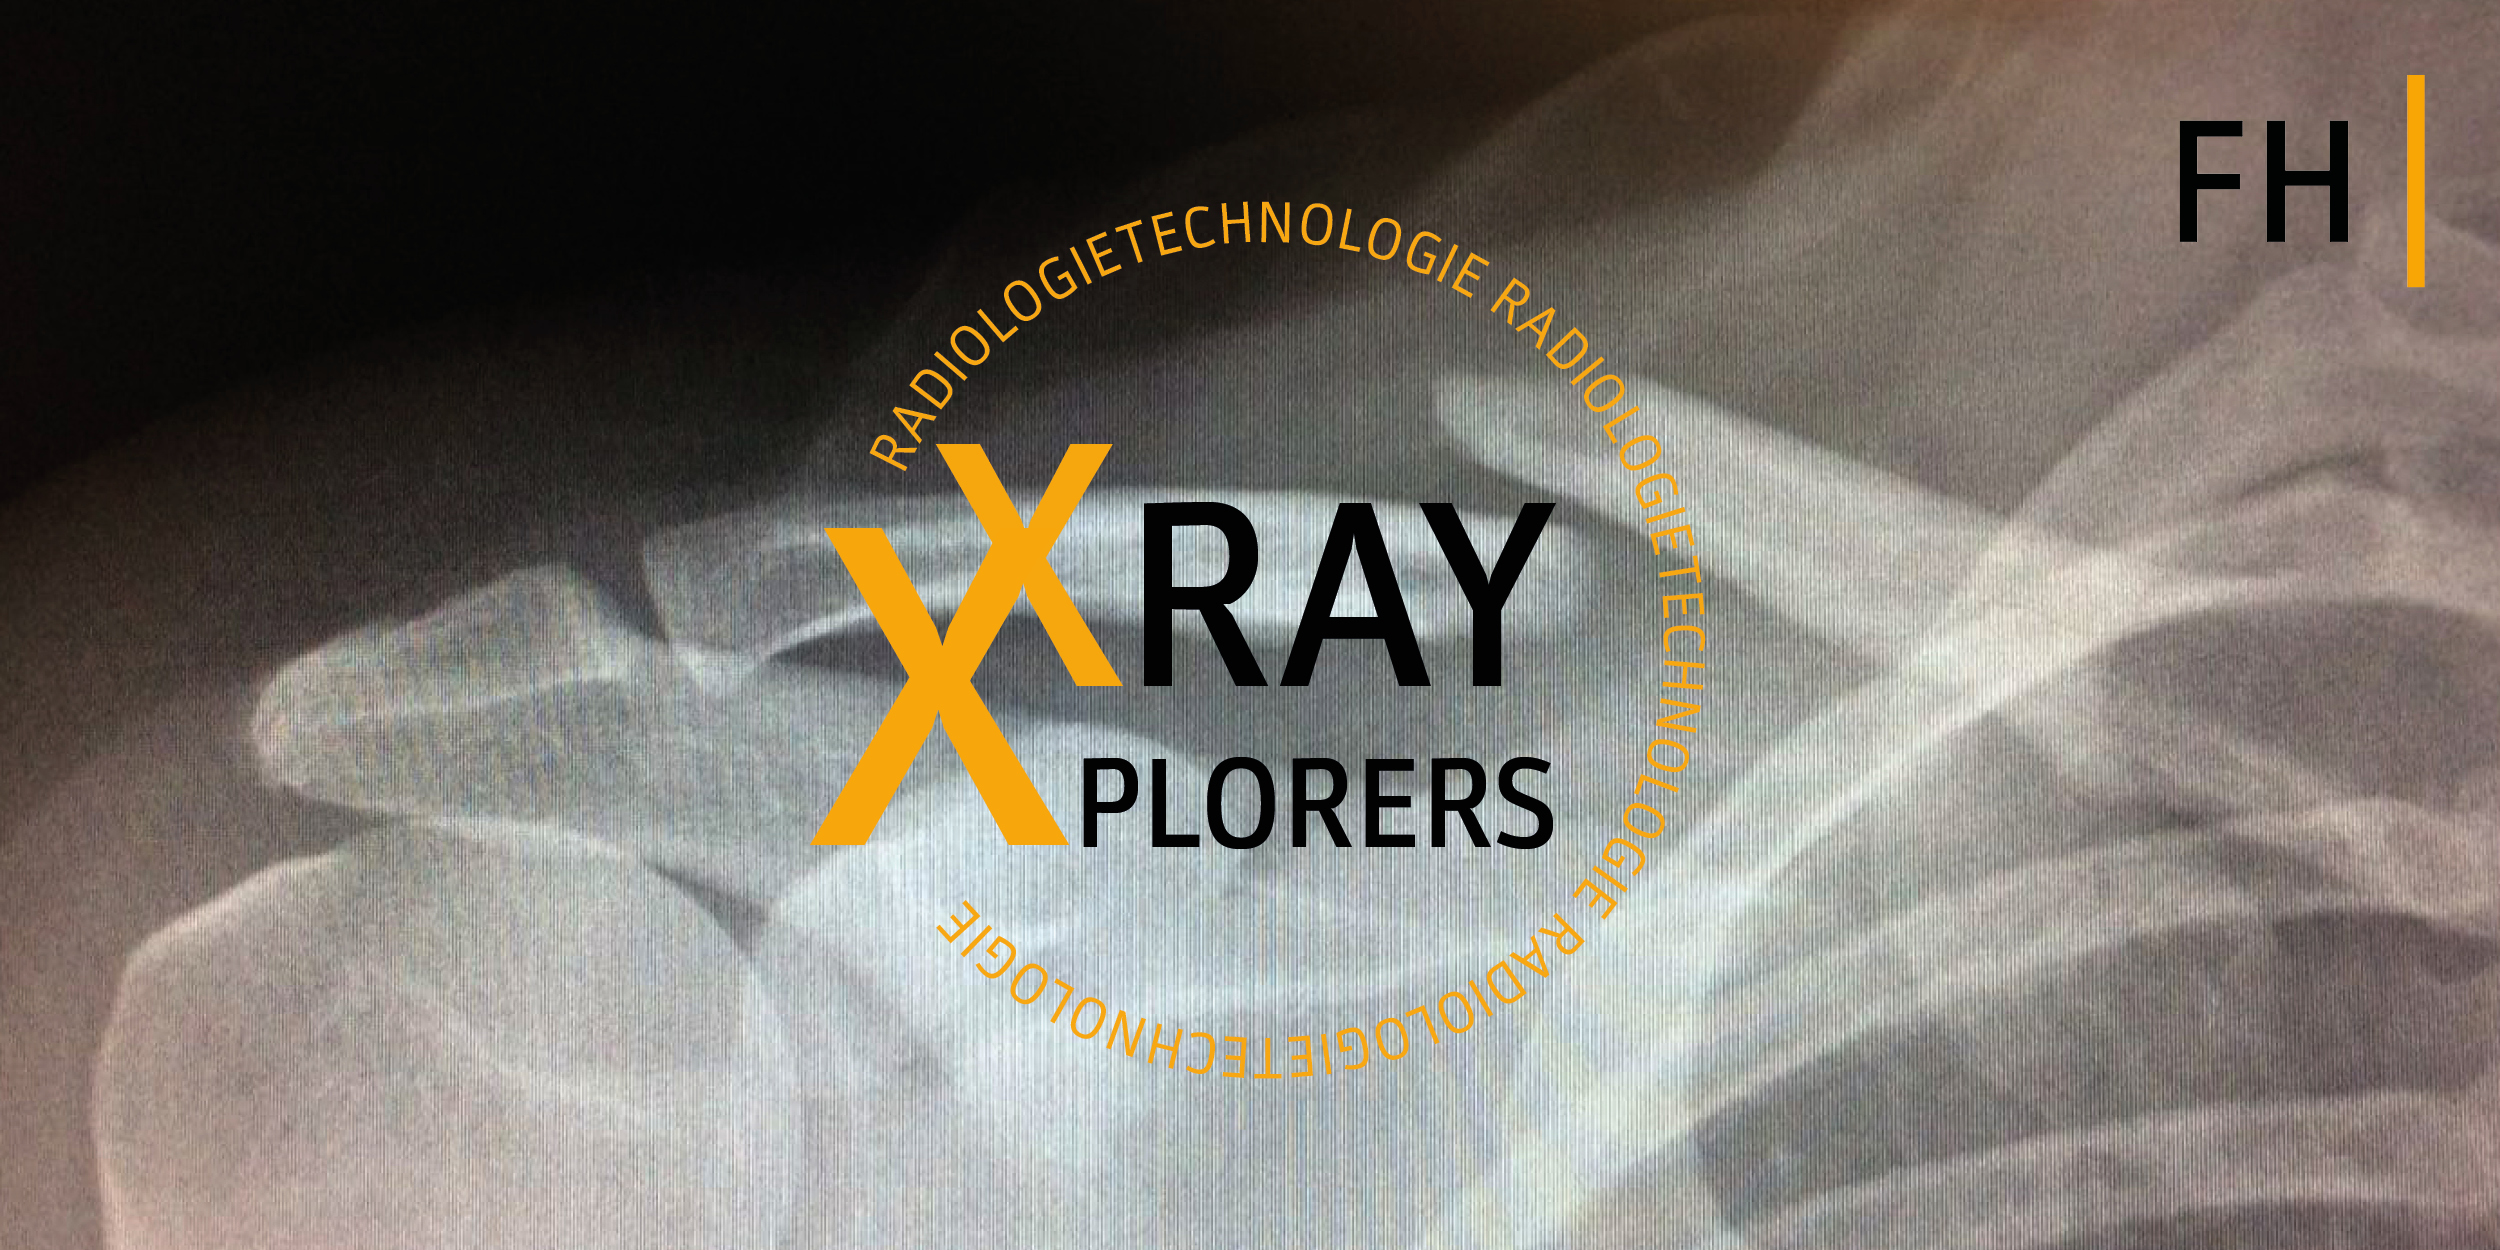 Zu sehen ist ein Röntgenbild und das Logo der Videoreihe X-ray X-plorers